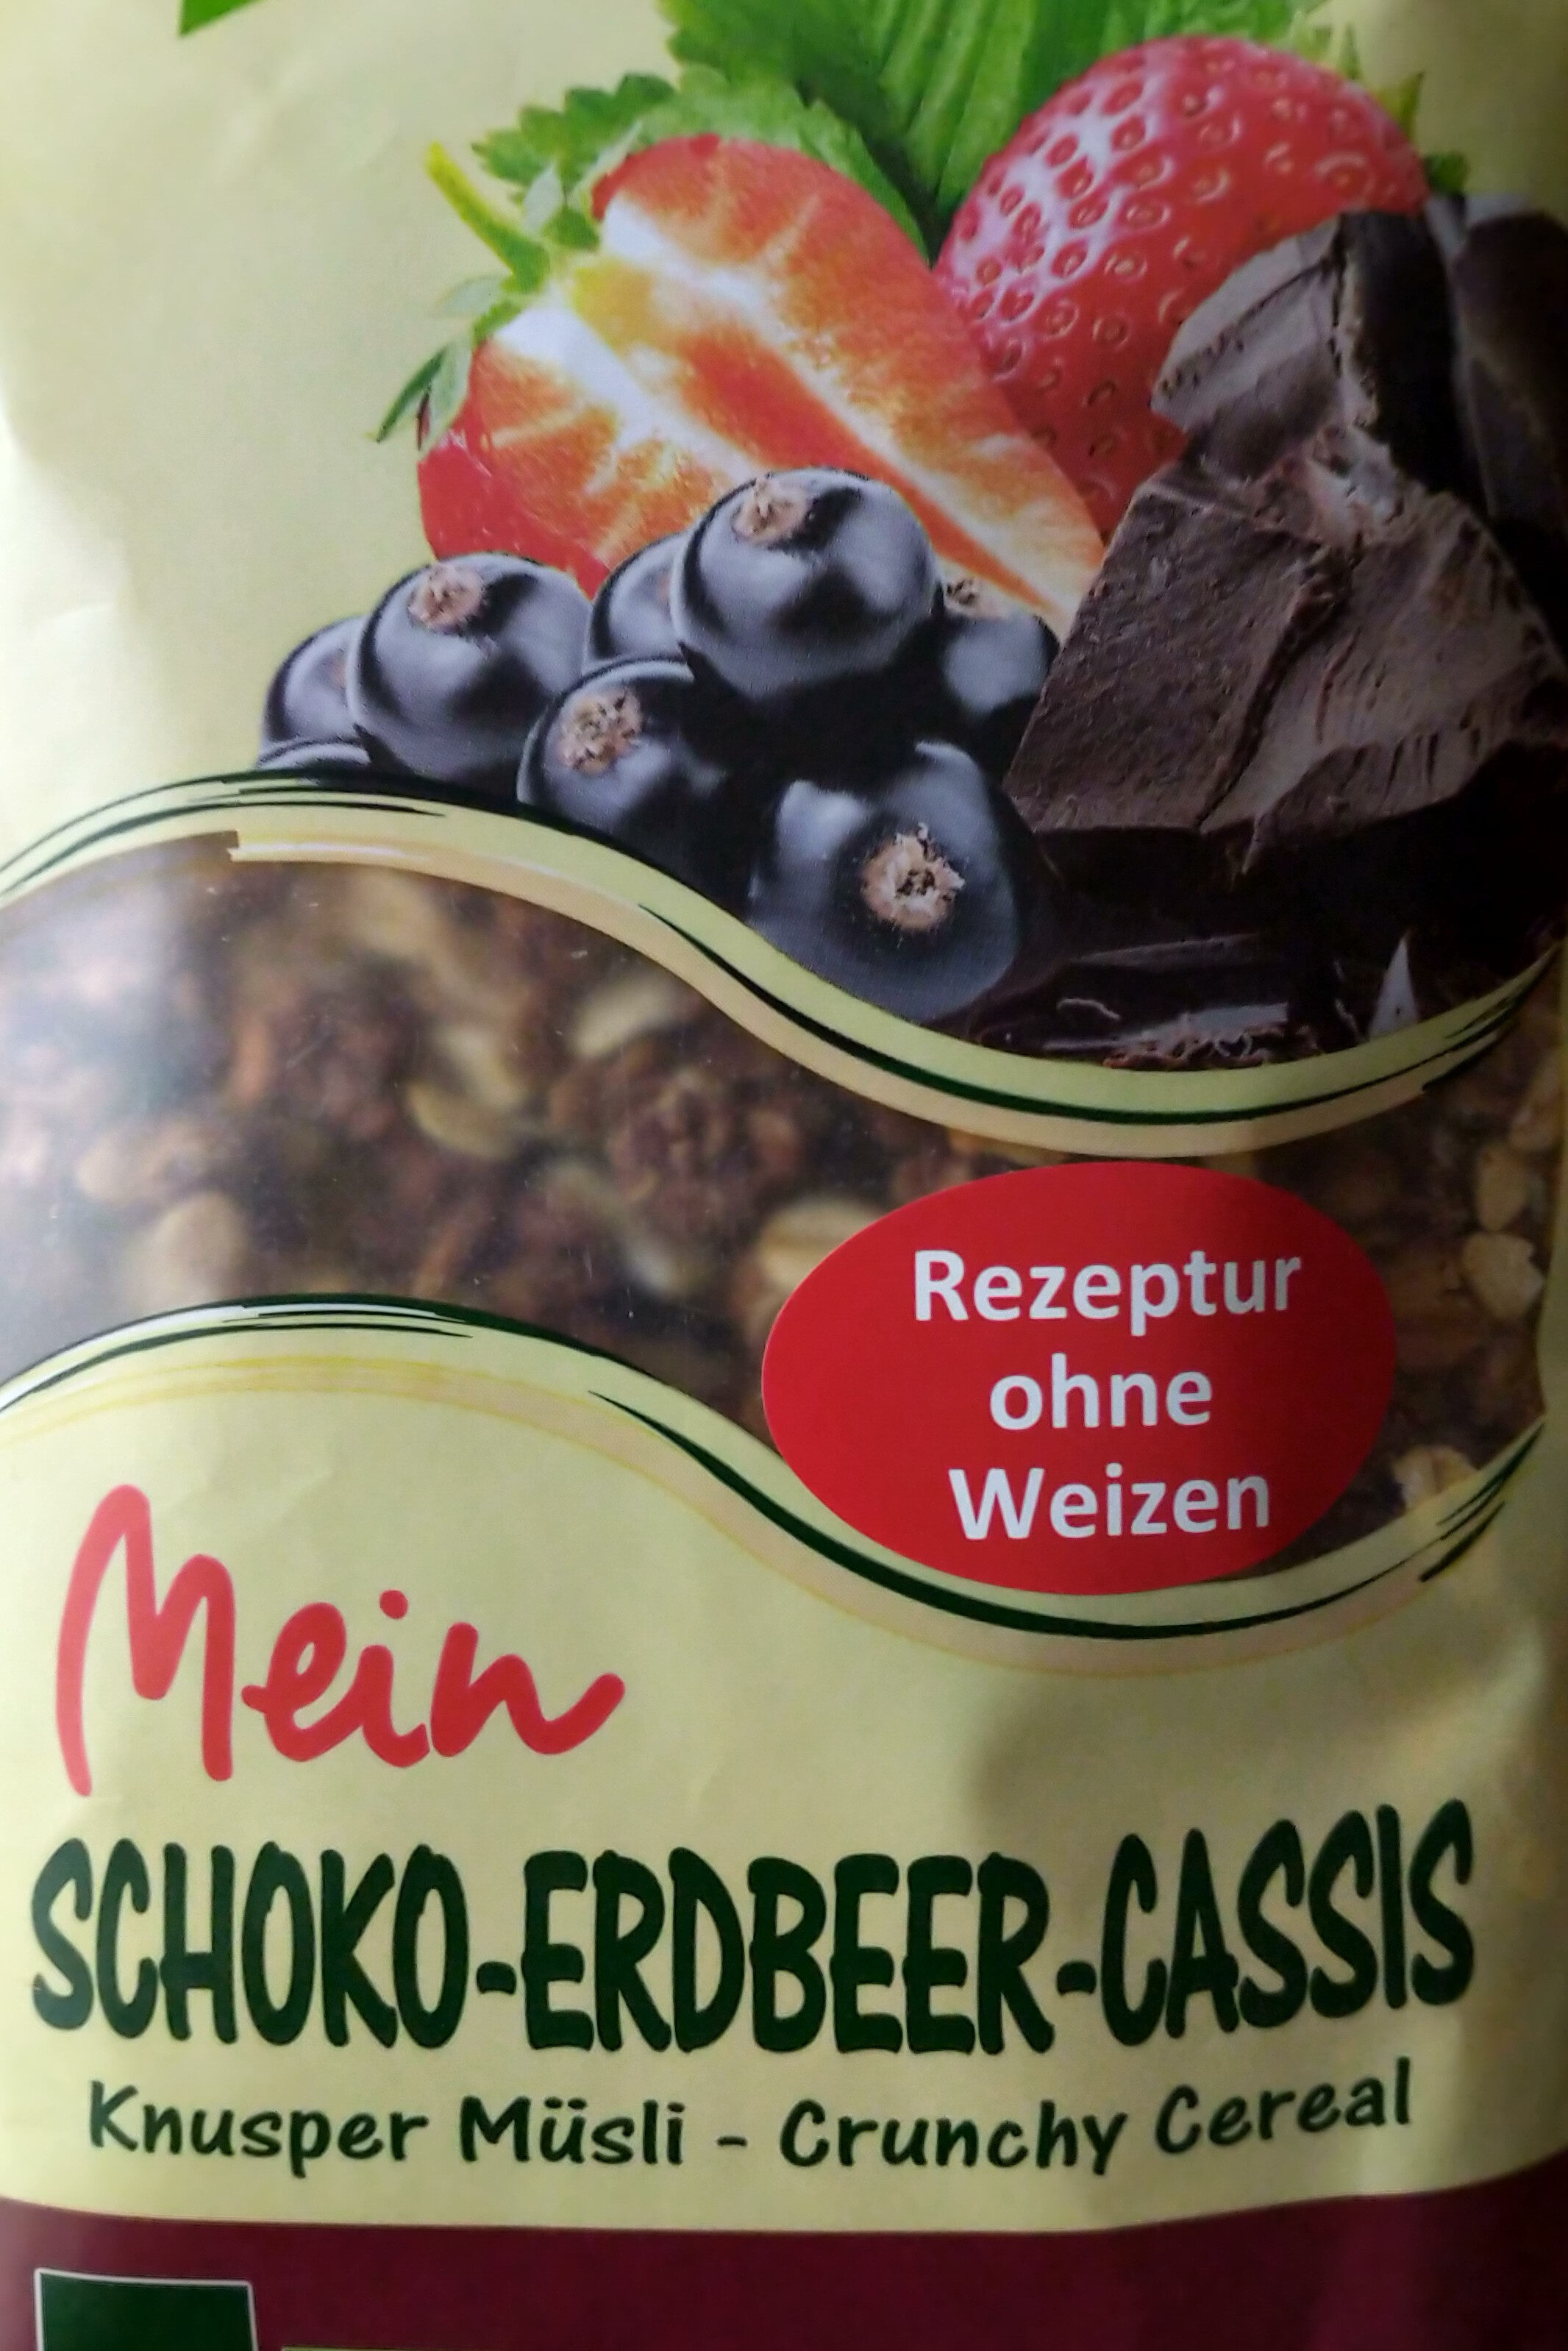 Schoko Erdbeer Cassis Knusper Muesli - Product - en